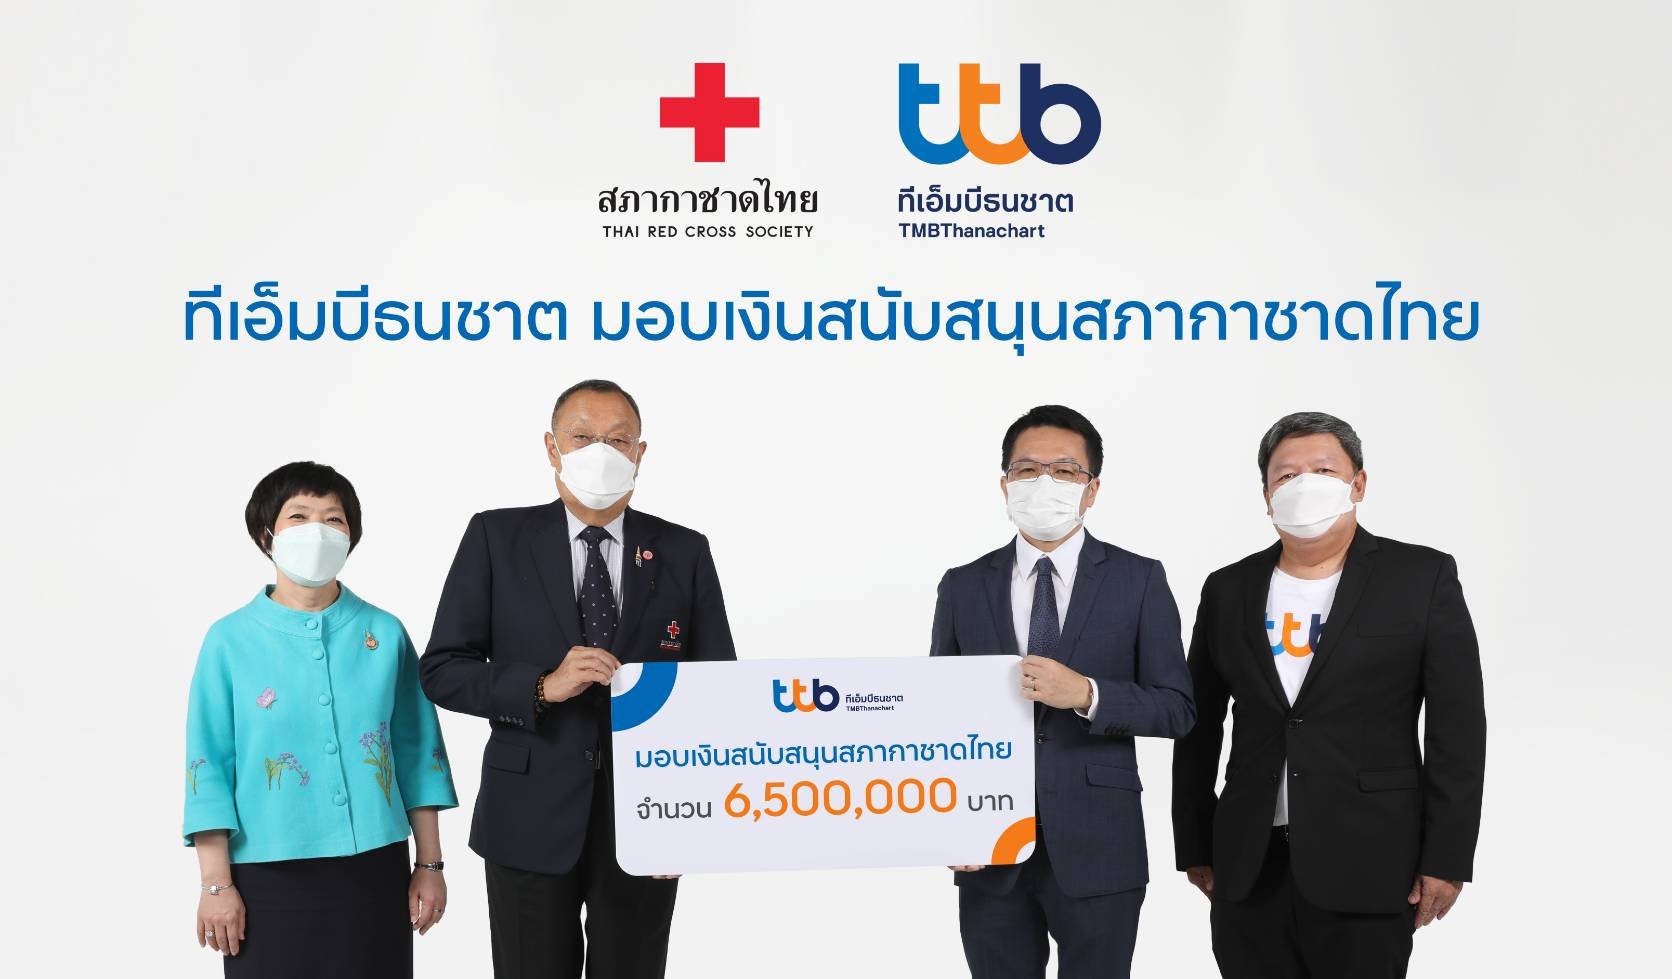 ttb มอบเงินสนับสนุนแก่สภากาชาดไทย 6.5 ล้านบาท 